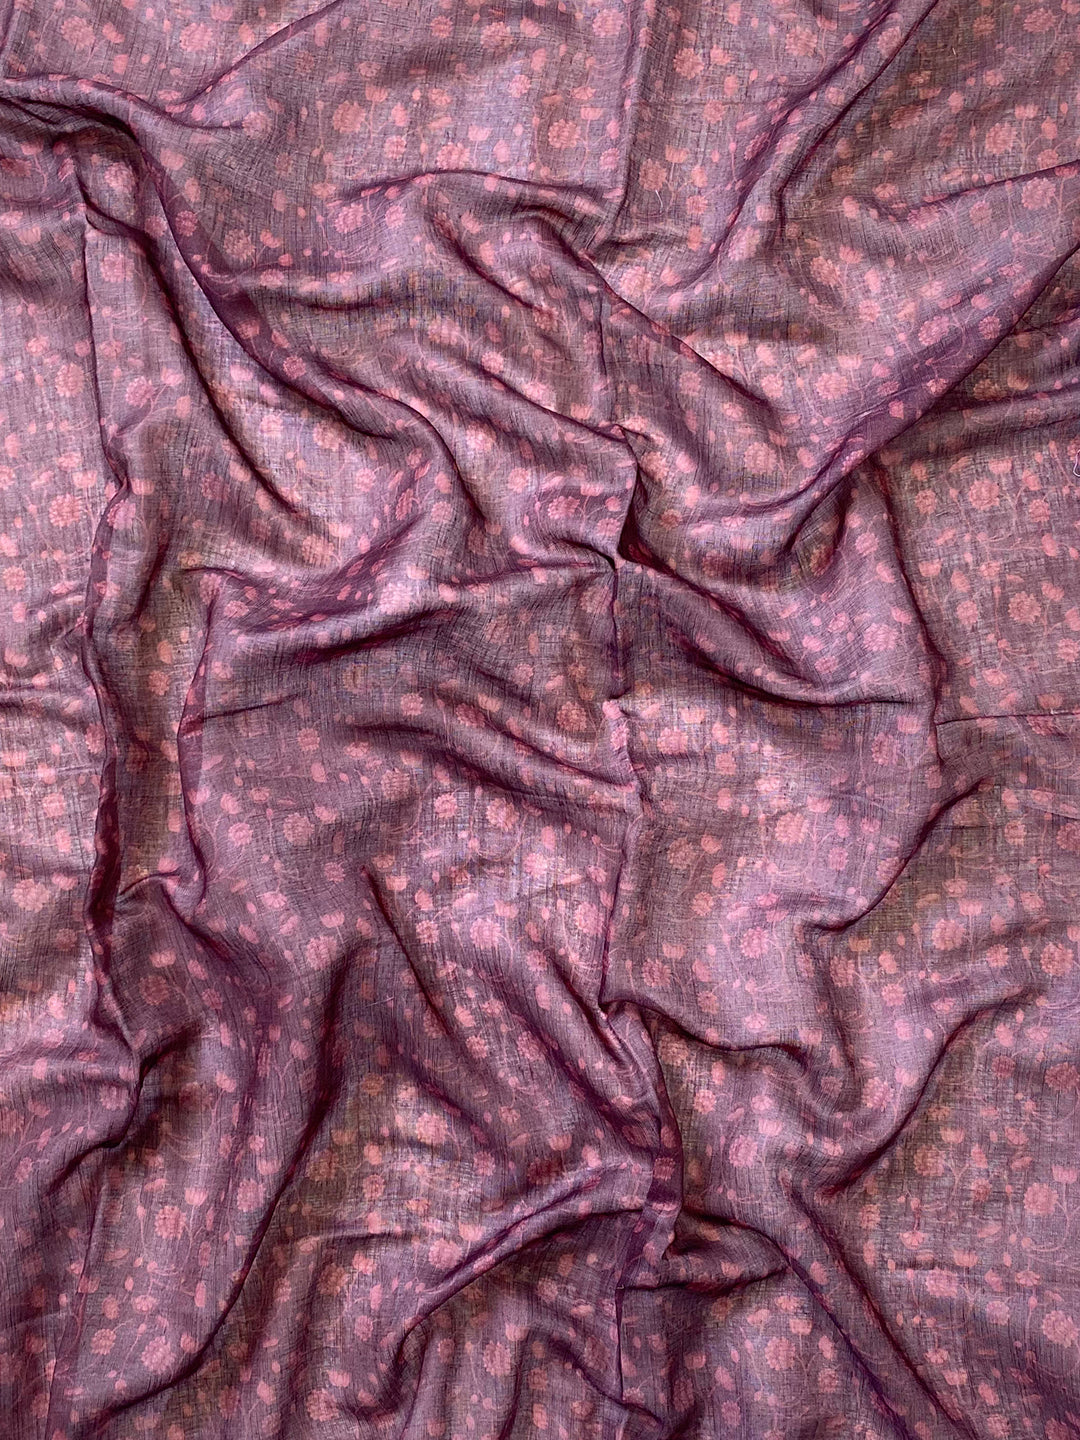 Soft Linen Ombre Pichwai Printed Brown Colour Saree